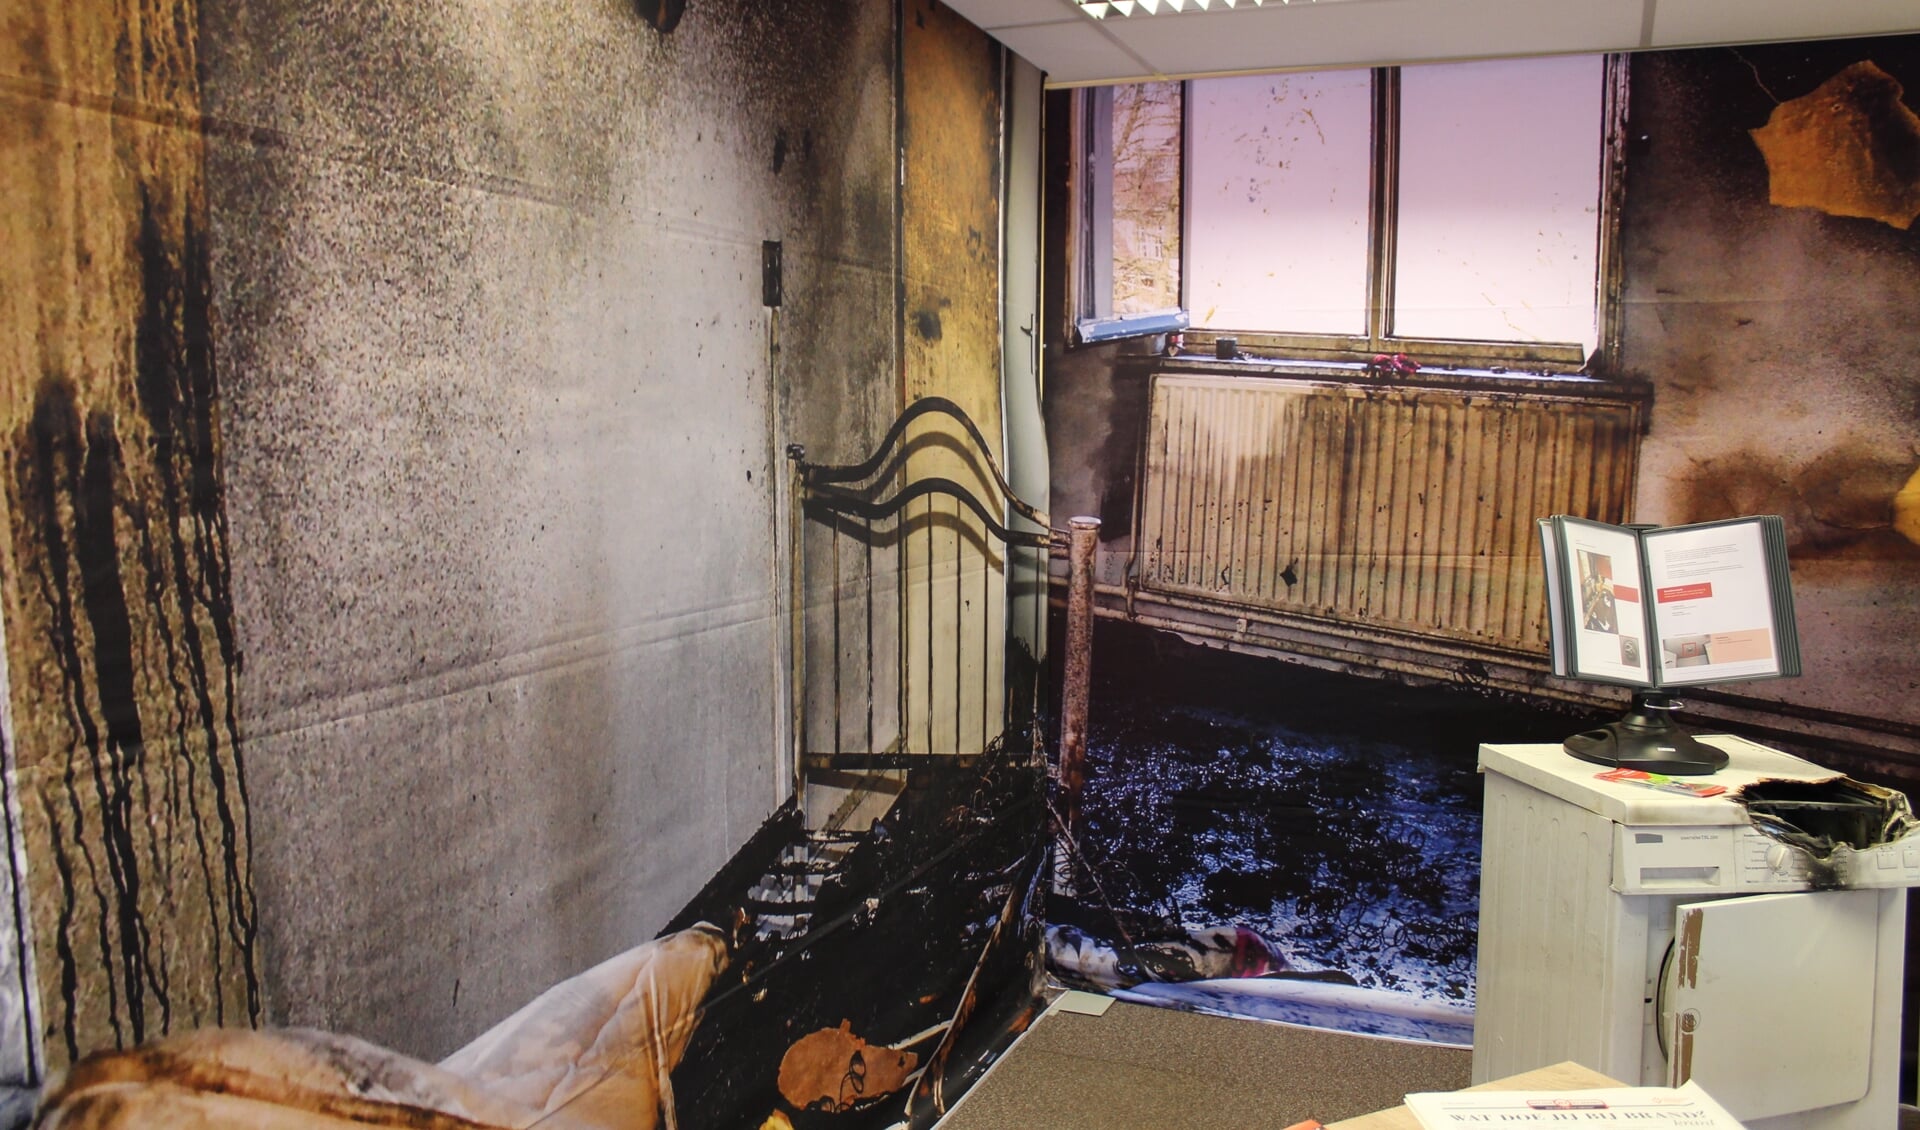 Een slaapkamer waar brand heeft gewoed. Foto ter illustratie